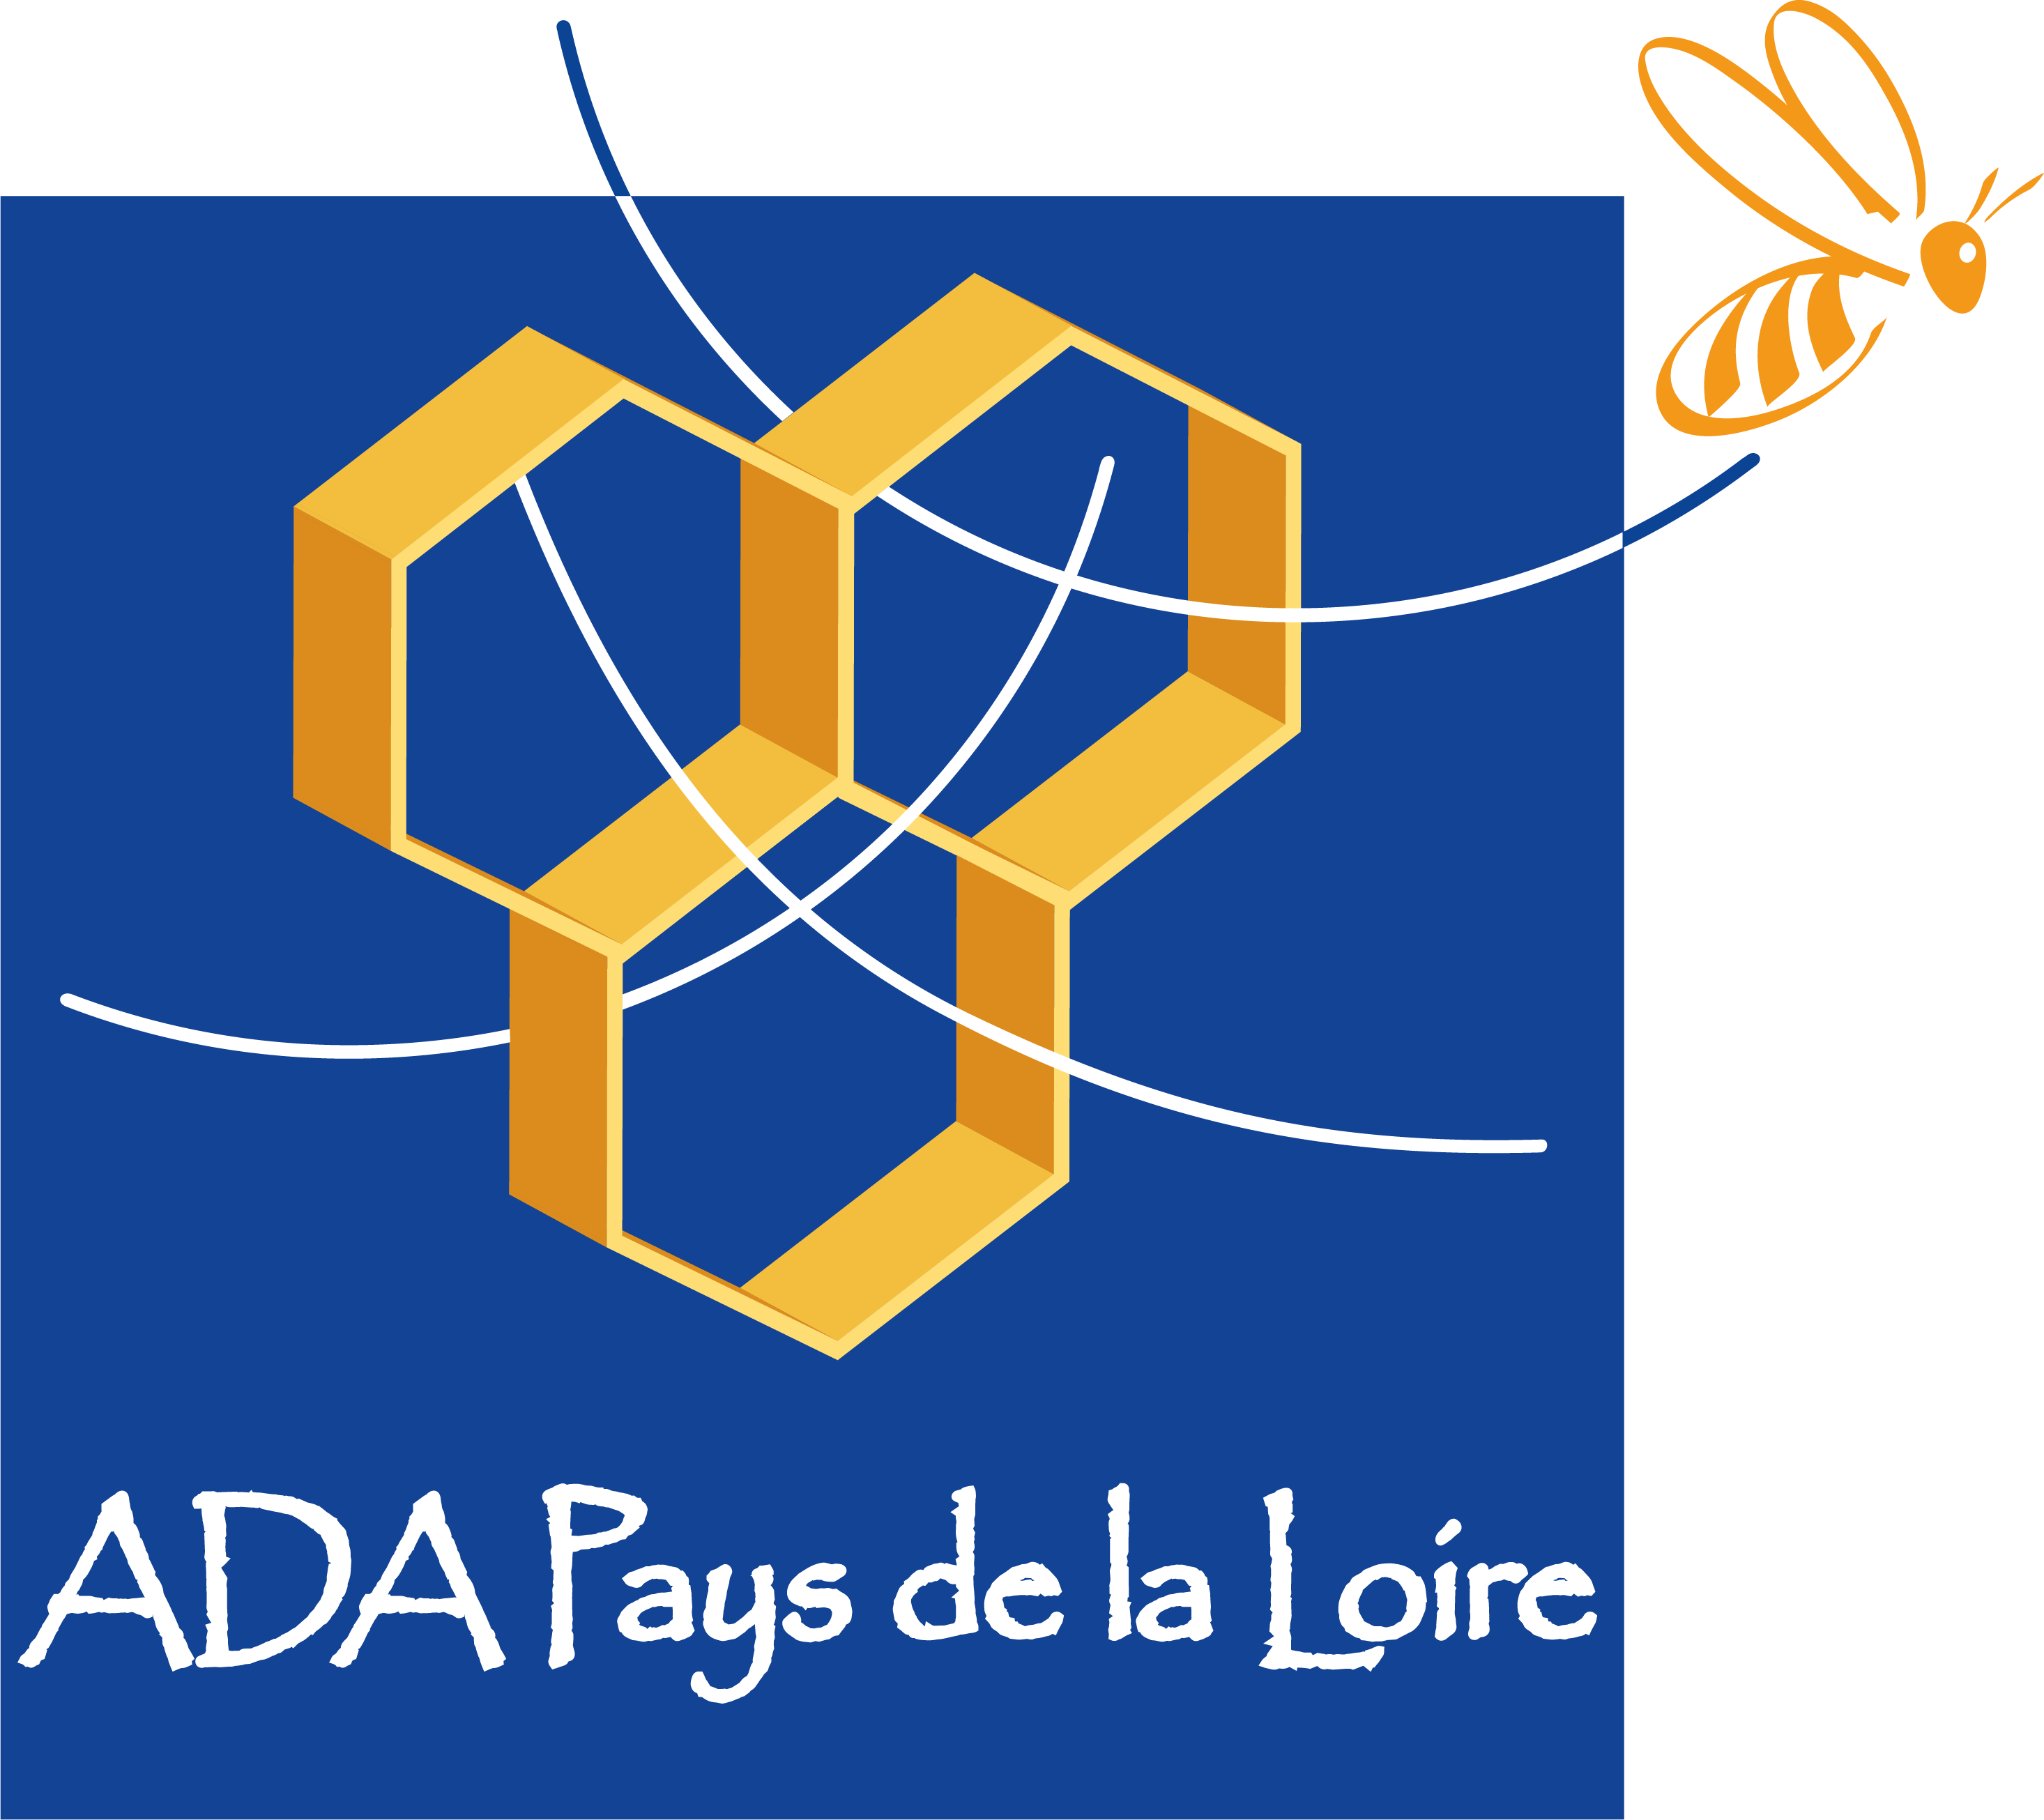 logo Ada Aura